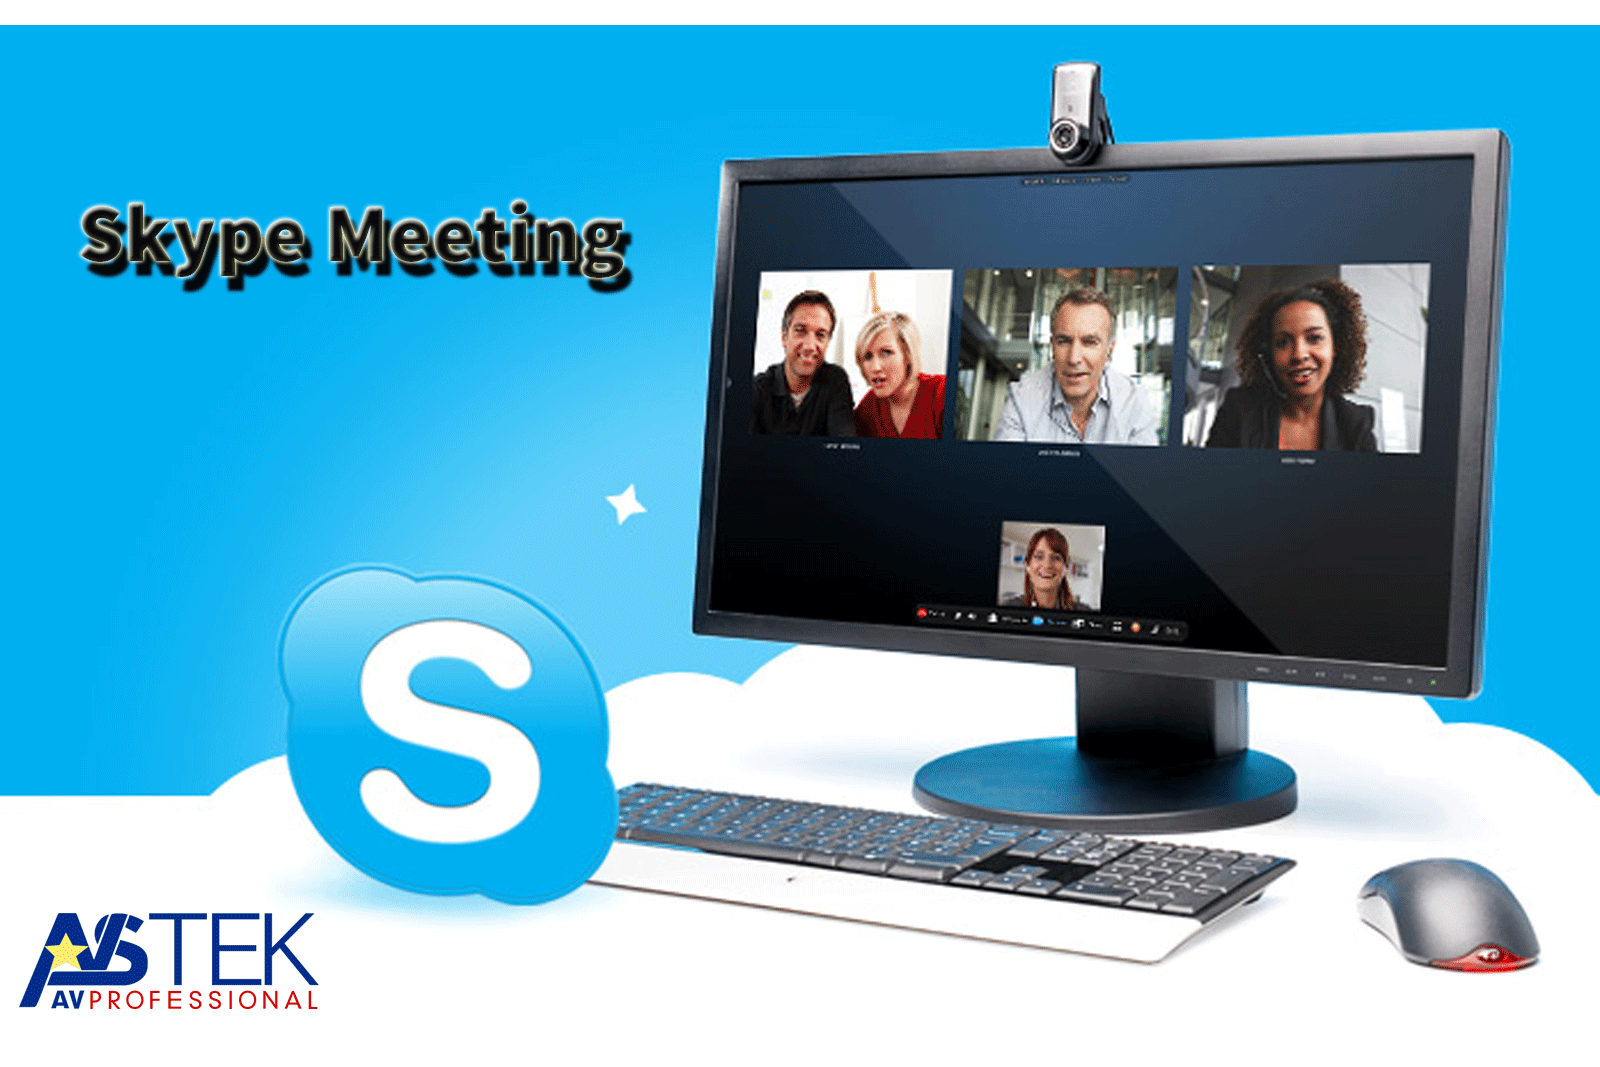 Cuộc hội họp hoàn hảo với Skype Meeting